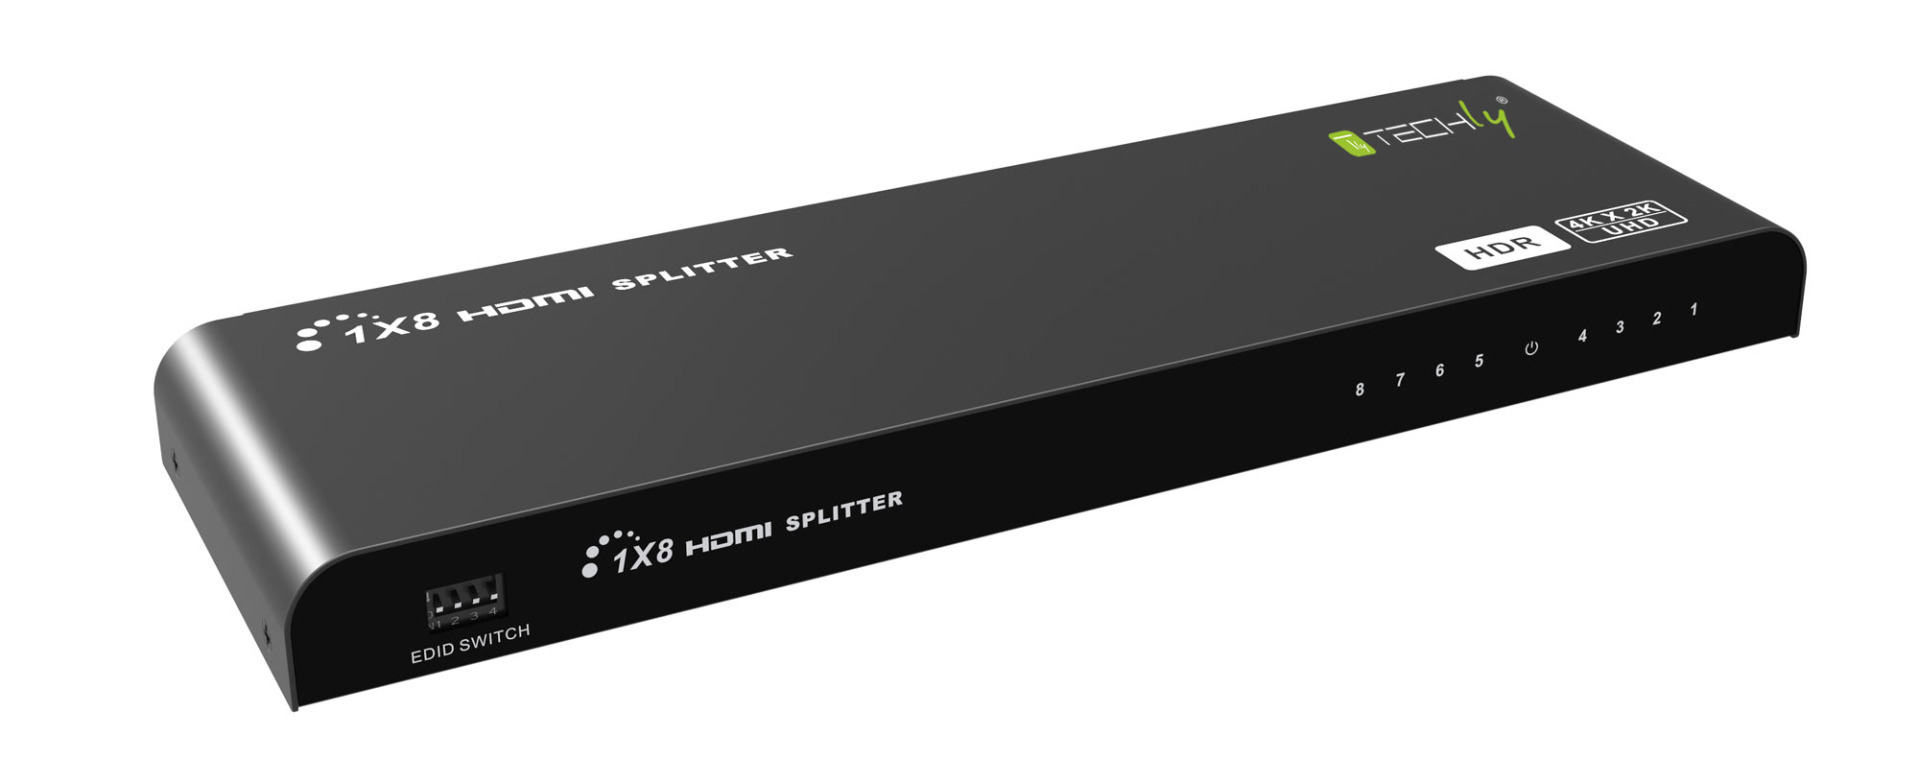 HDMI Splitter 4K 8 Port, HDR, 4K2K 60Hz